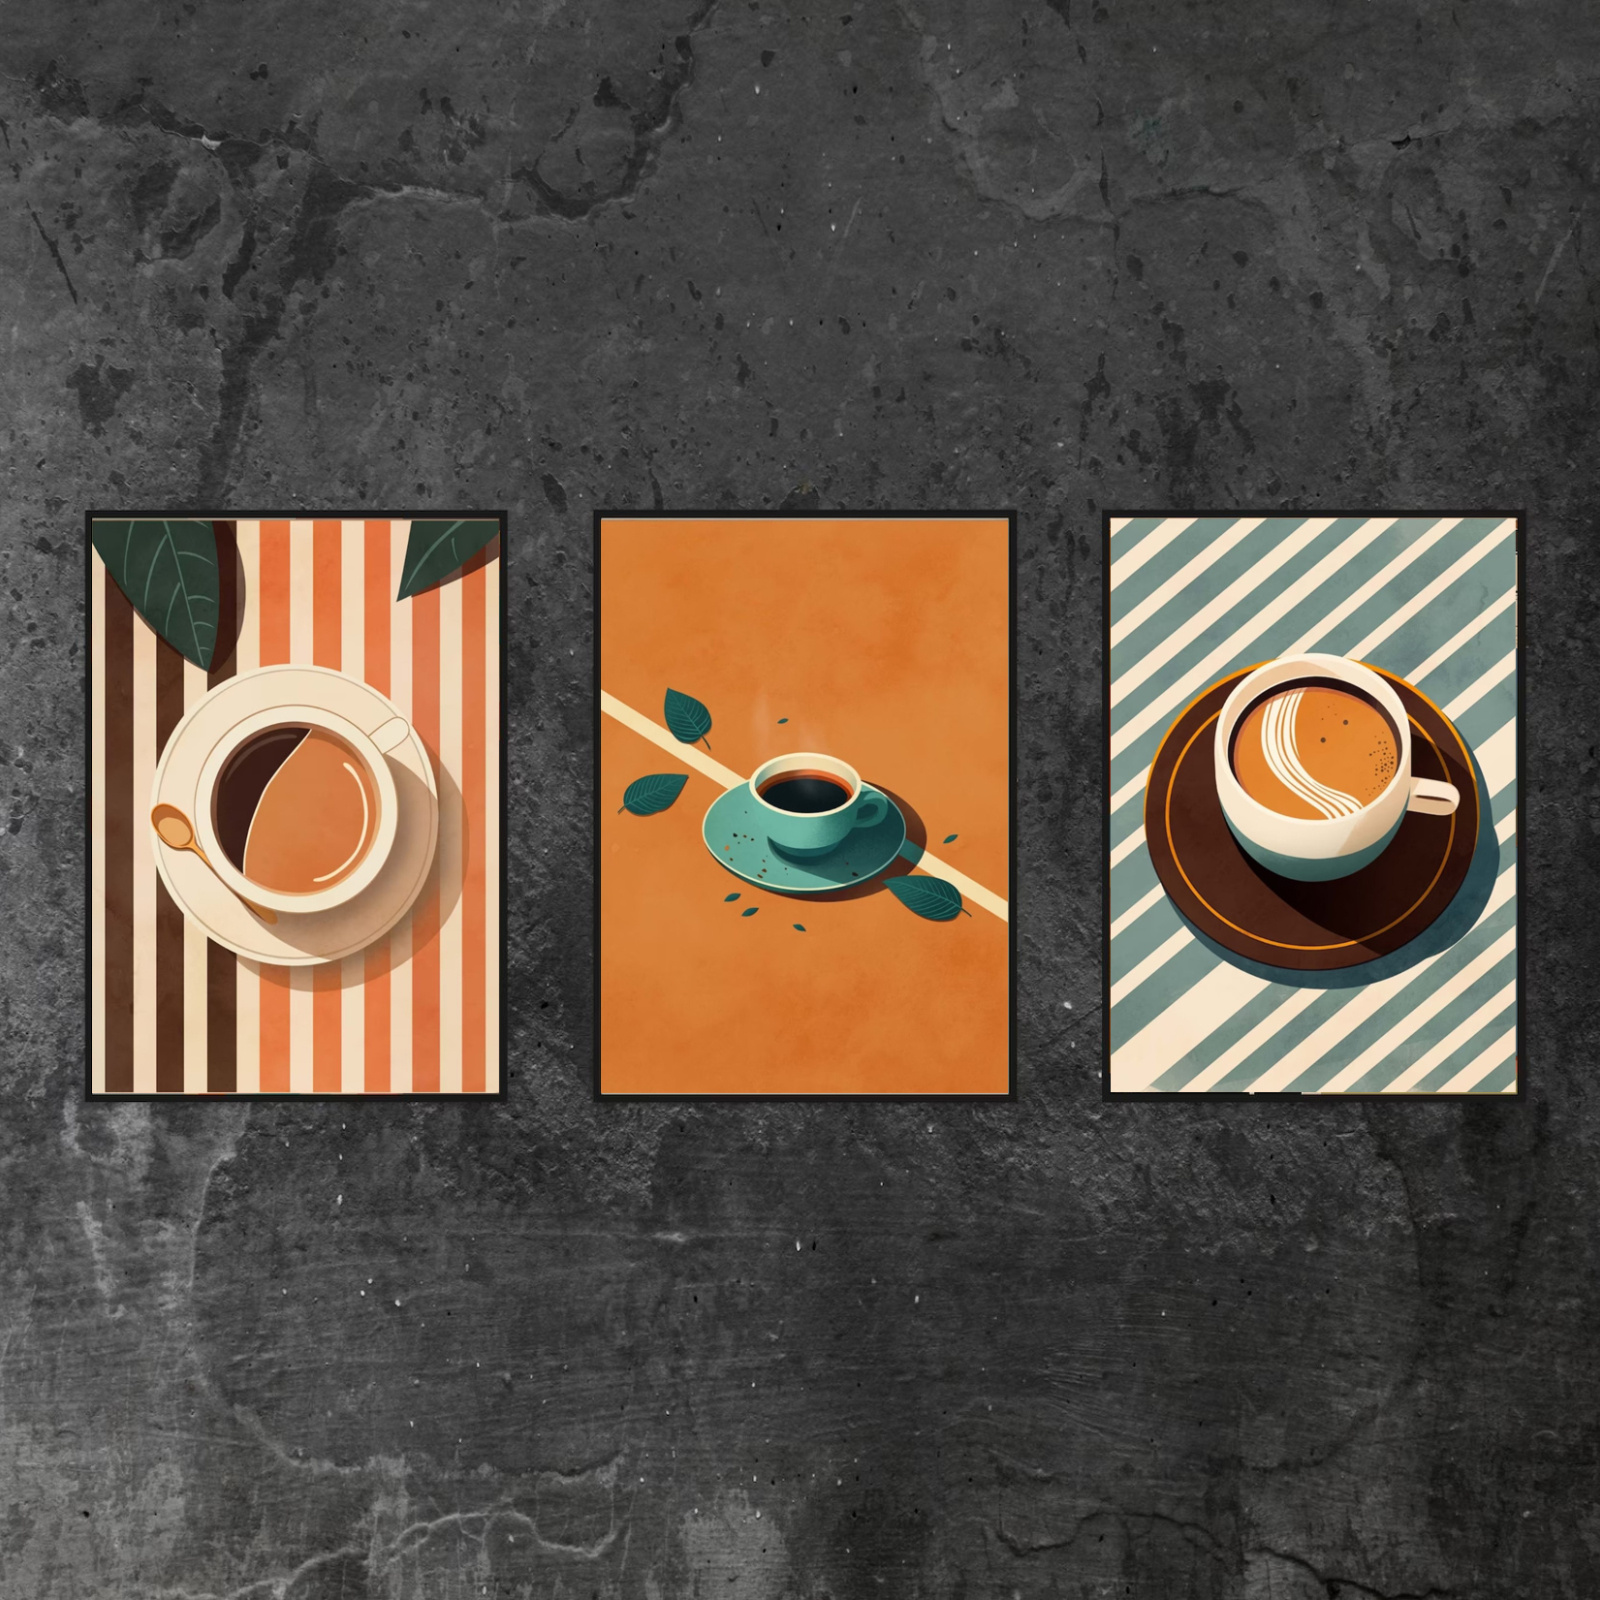 لوحة فنية قهوة عتيقة، ملصق قهوة منتصف القرن، طباعة قهوة من السبعينيات، لوحة جدارية قهوة ريترو، ديكور مطبخ بوهو، هدية لعشاق القهوة